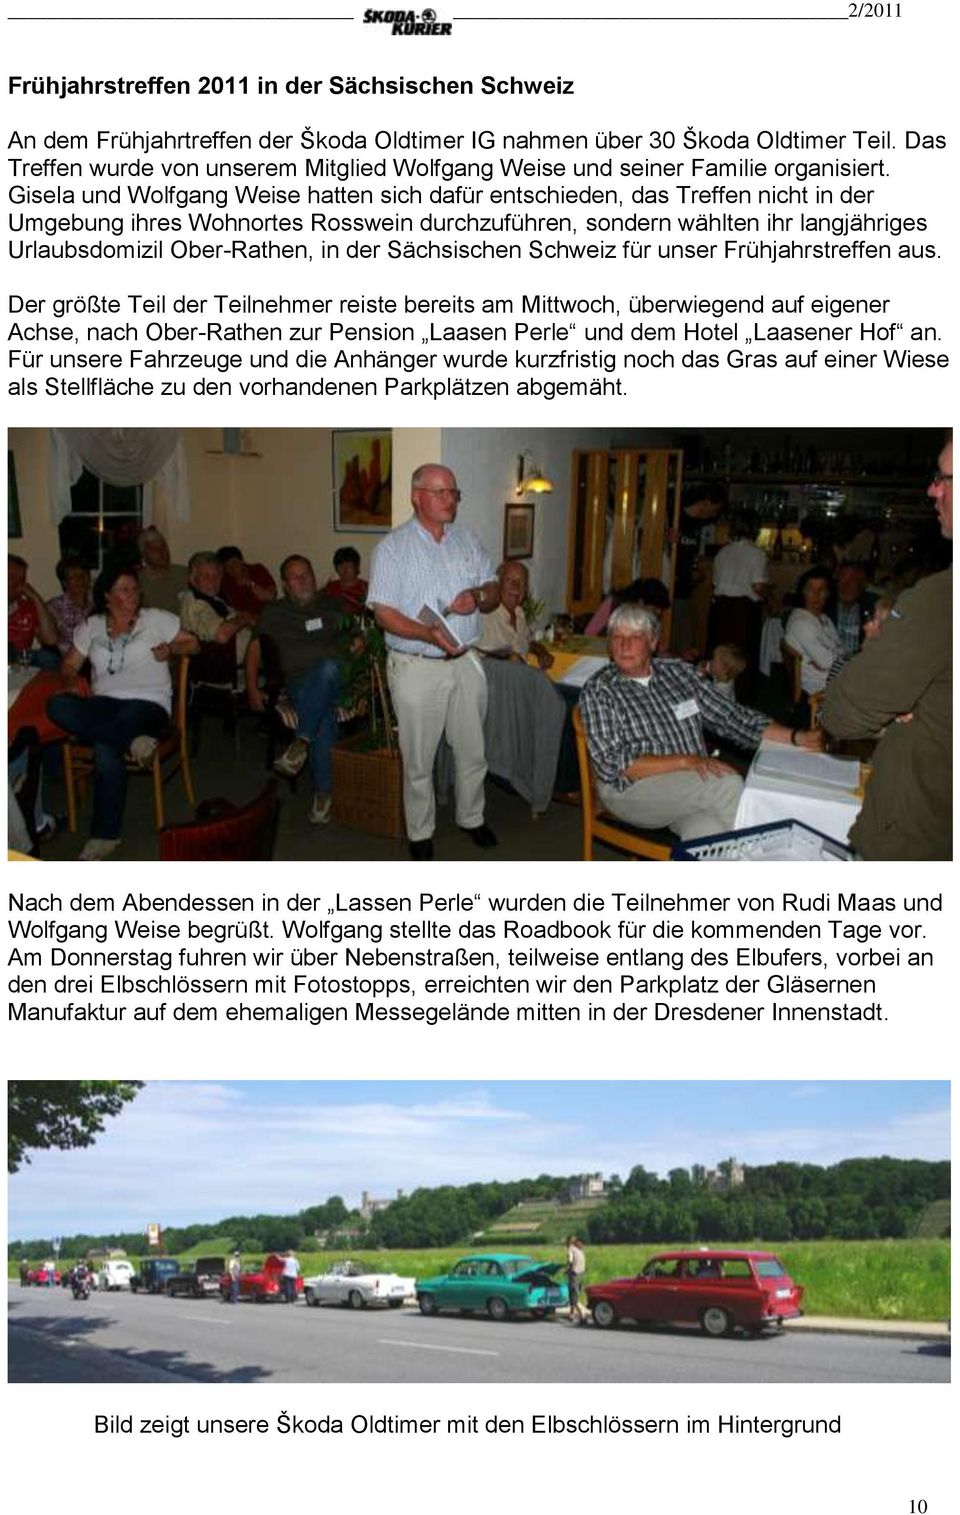 Gisela und Wolfgang Weise hatten sich dafür entschieden, das Treffen nicht in der Umgebung ihres Wohnortes Rosswein durchzuführen, sondern wählten ihr langjähriges Urlaubsdomizil Ober-Rathen, in der